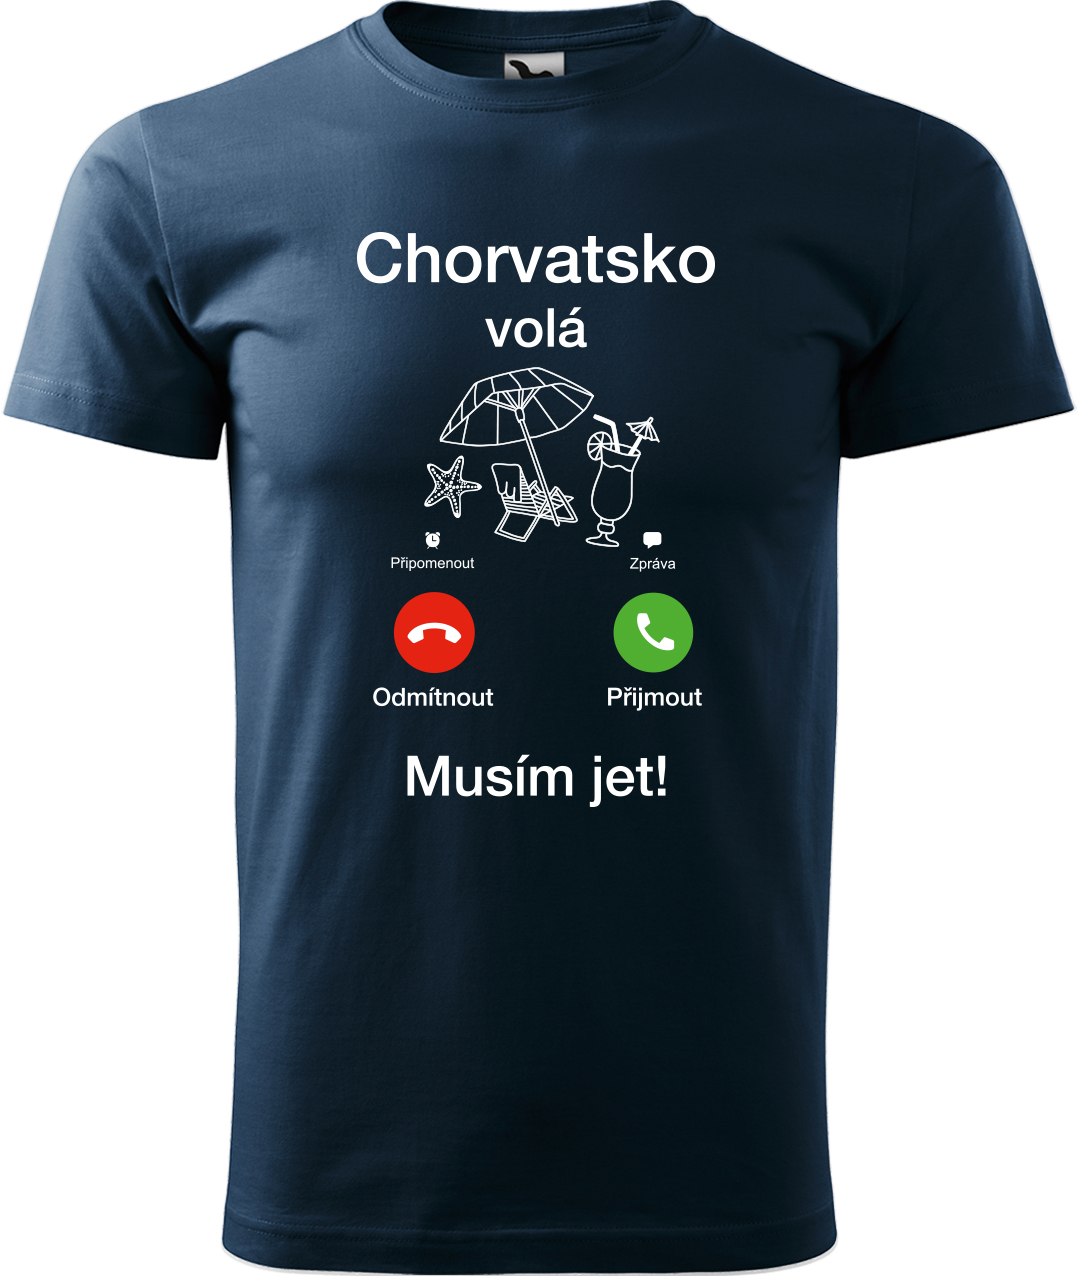 Pánské cestovatelské tričko - Chorvatsko volá - musím jet! Velikost: S, Barva: Námořní modrá (02), Střih: pánský